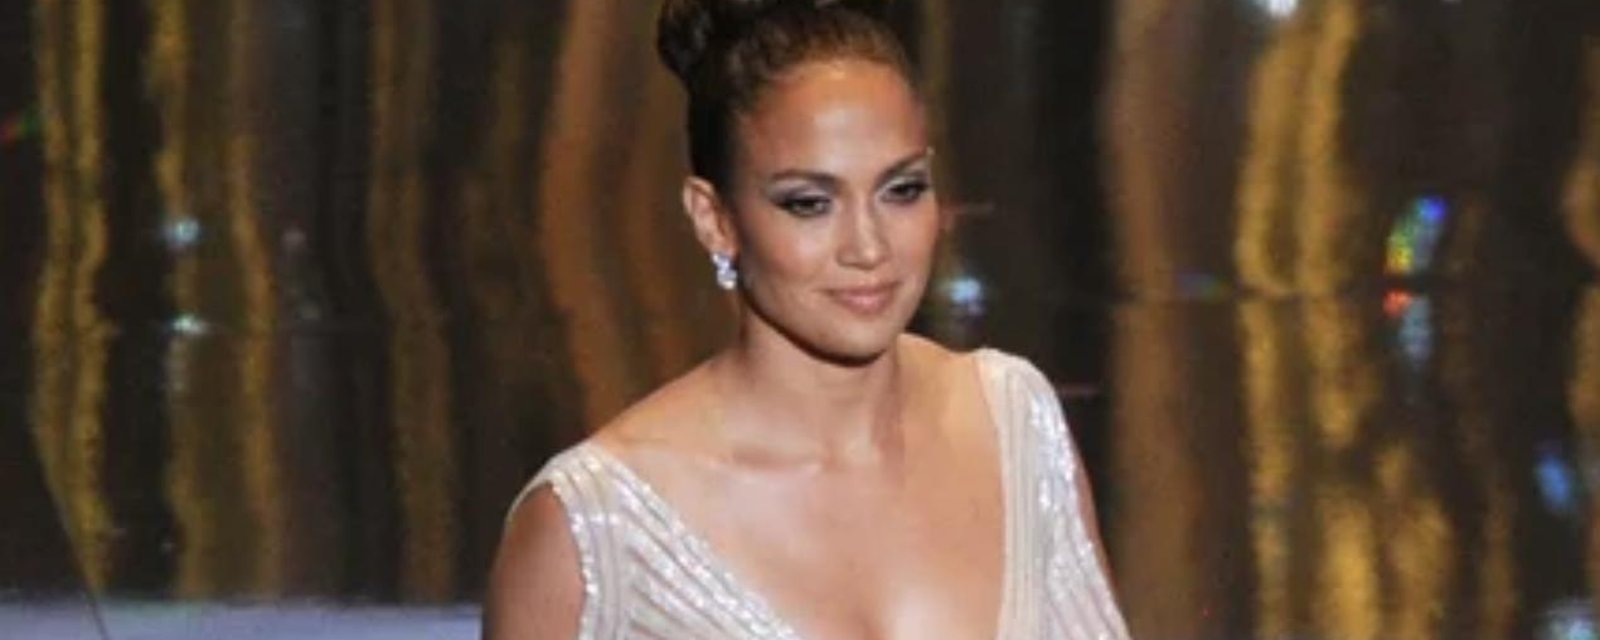 La fois où Jennifer Lopez a ébloui le monde entier avec son incroyable robe blanche...